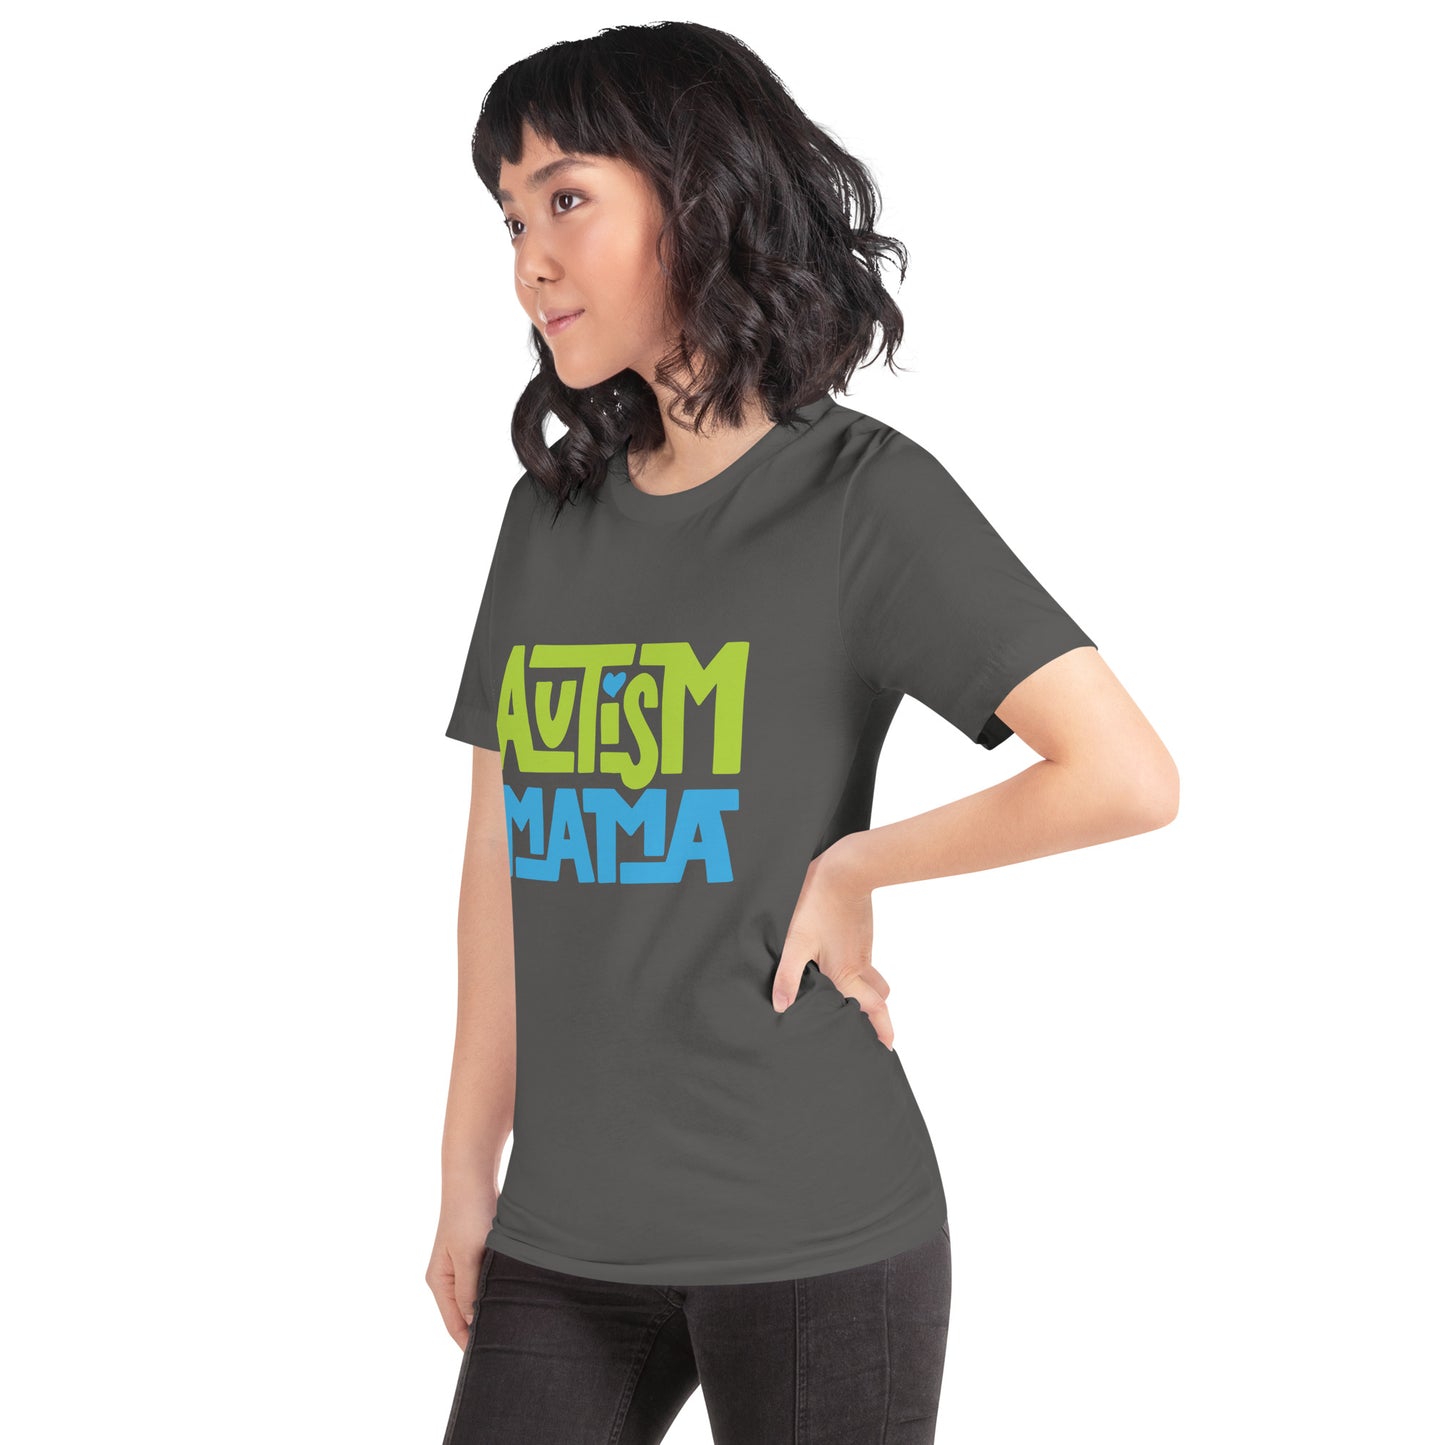 AUTISM MAMA- Unisex t-shirt